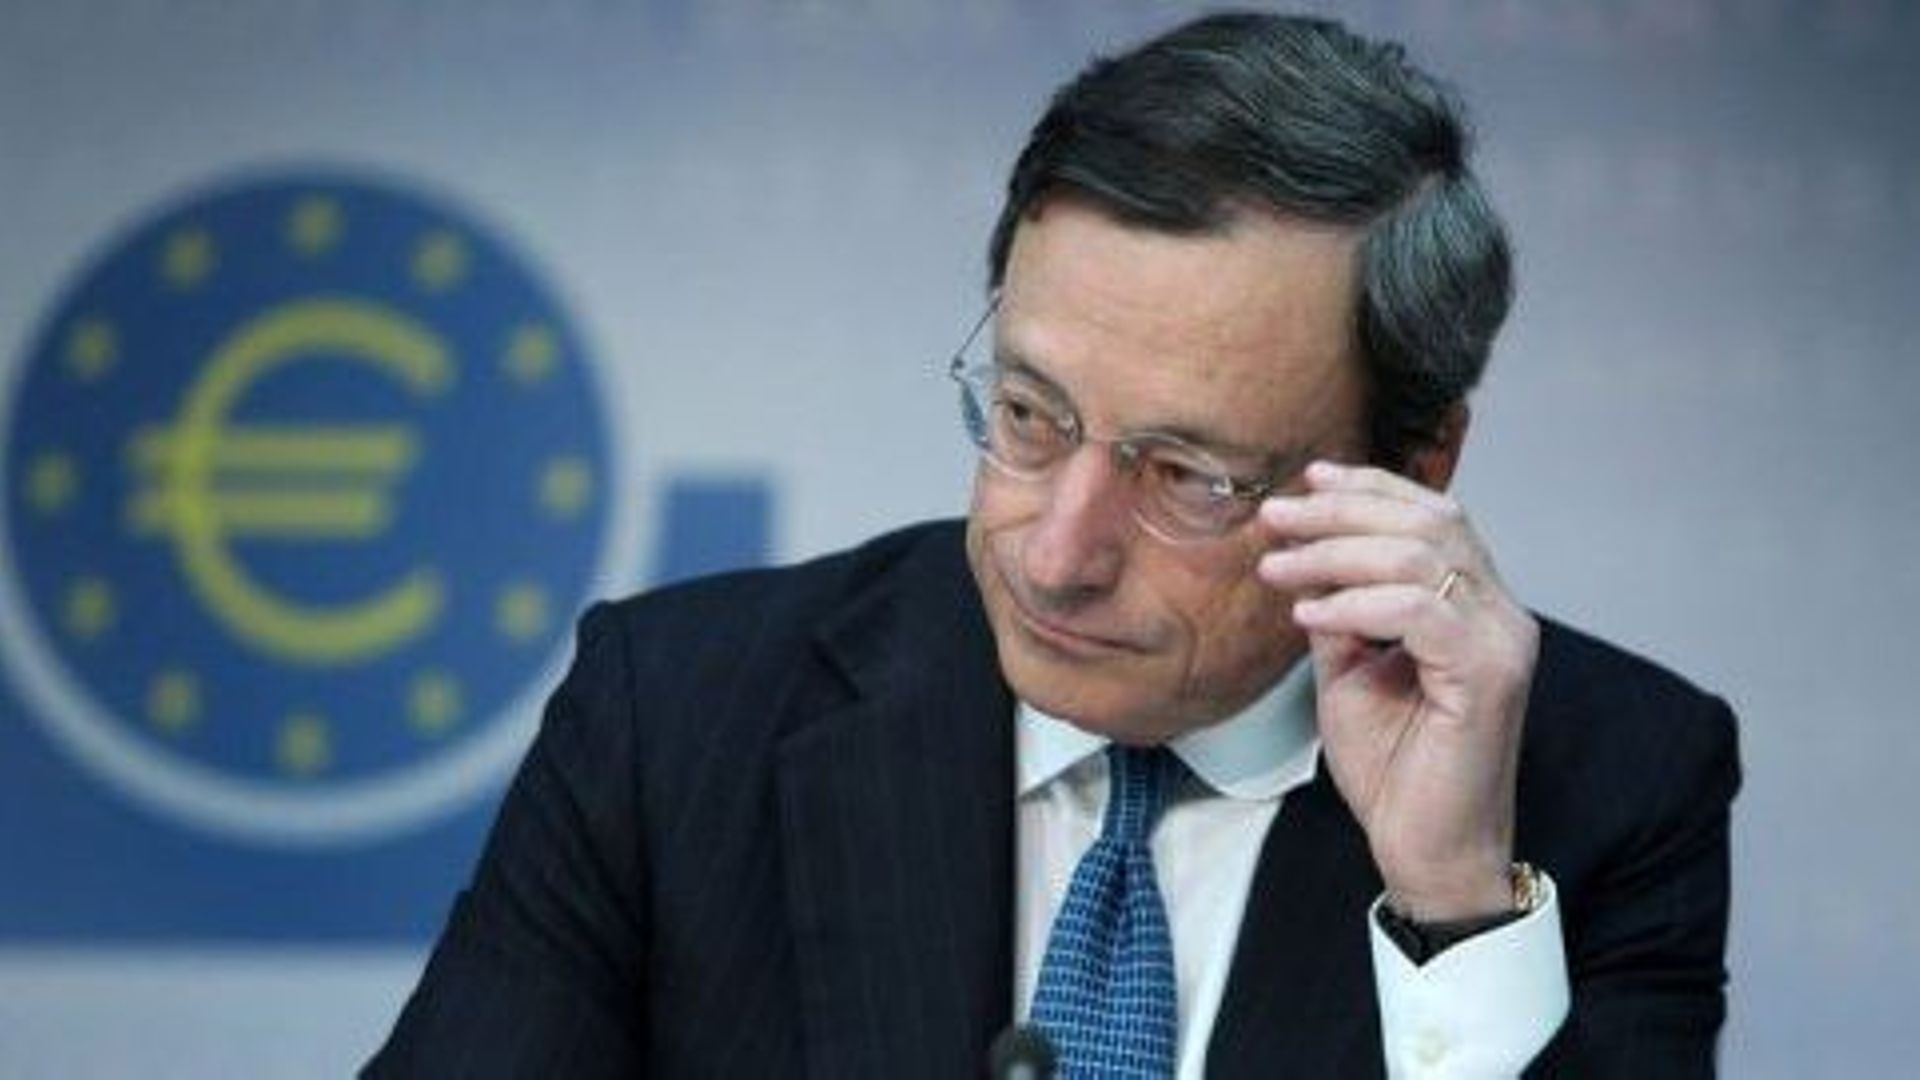 Mario Draghi lors d'une conférence de presse au siège de la BCE à Francfort, le 2 août 2012